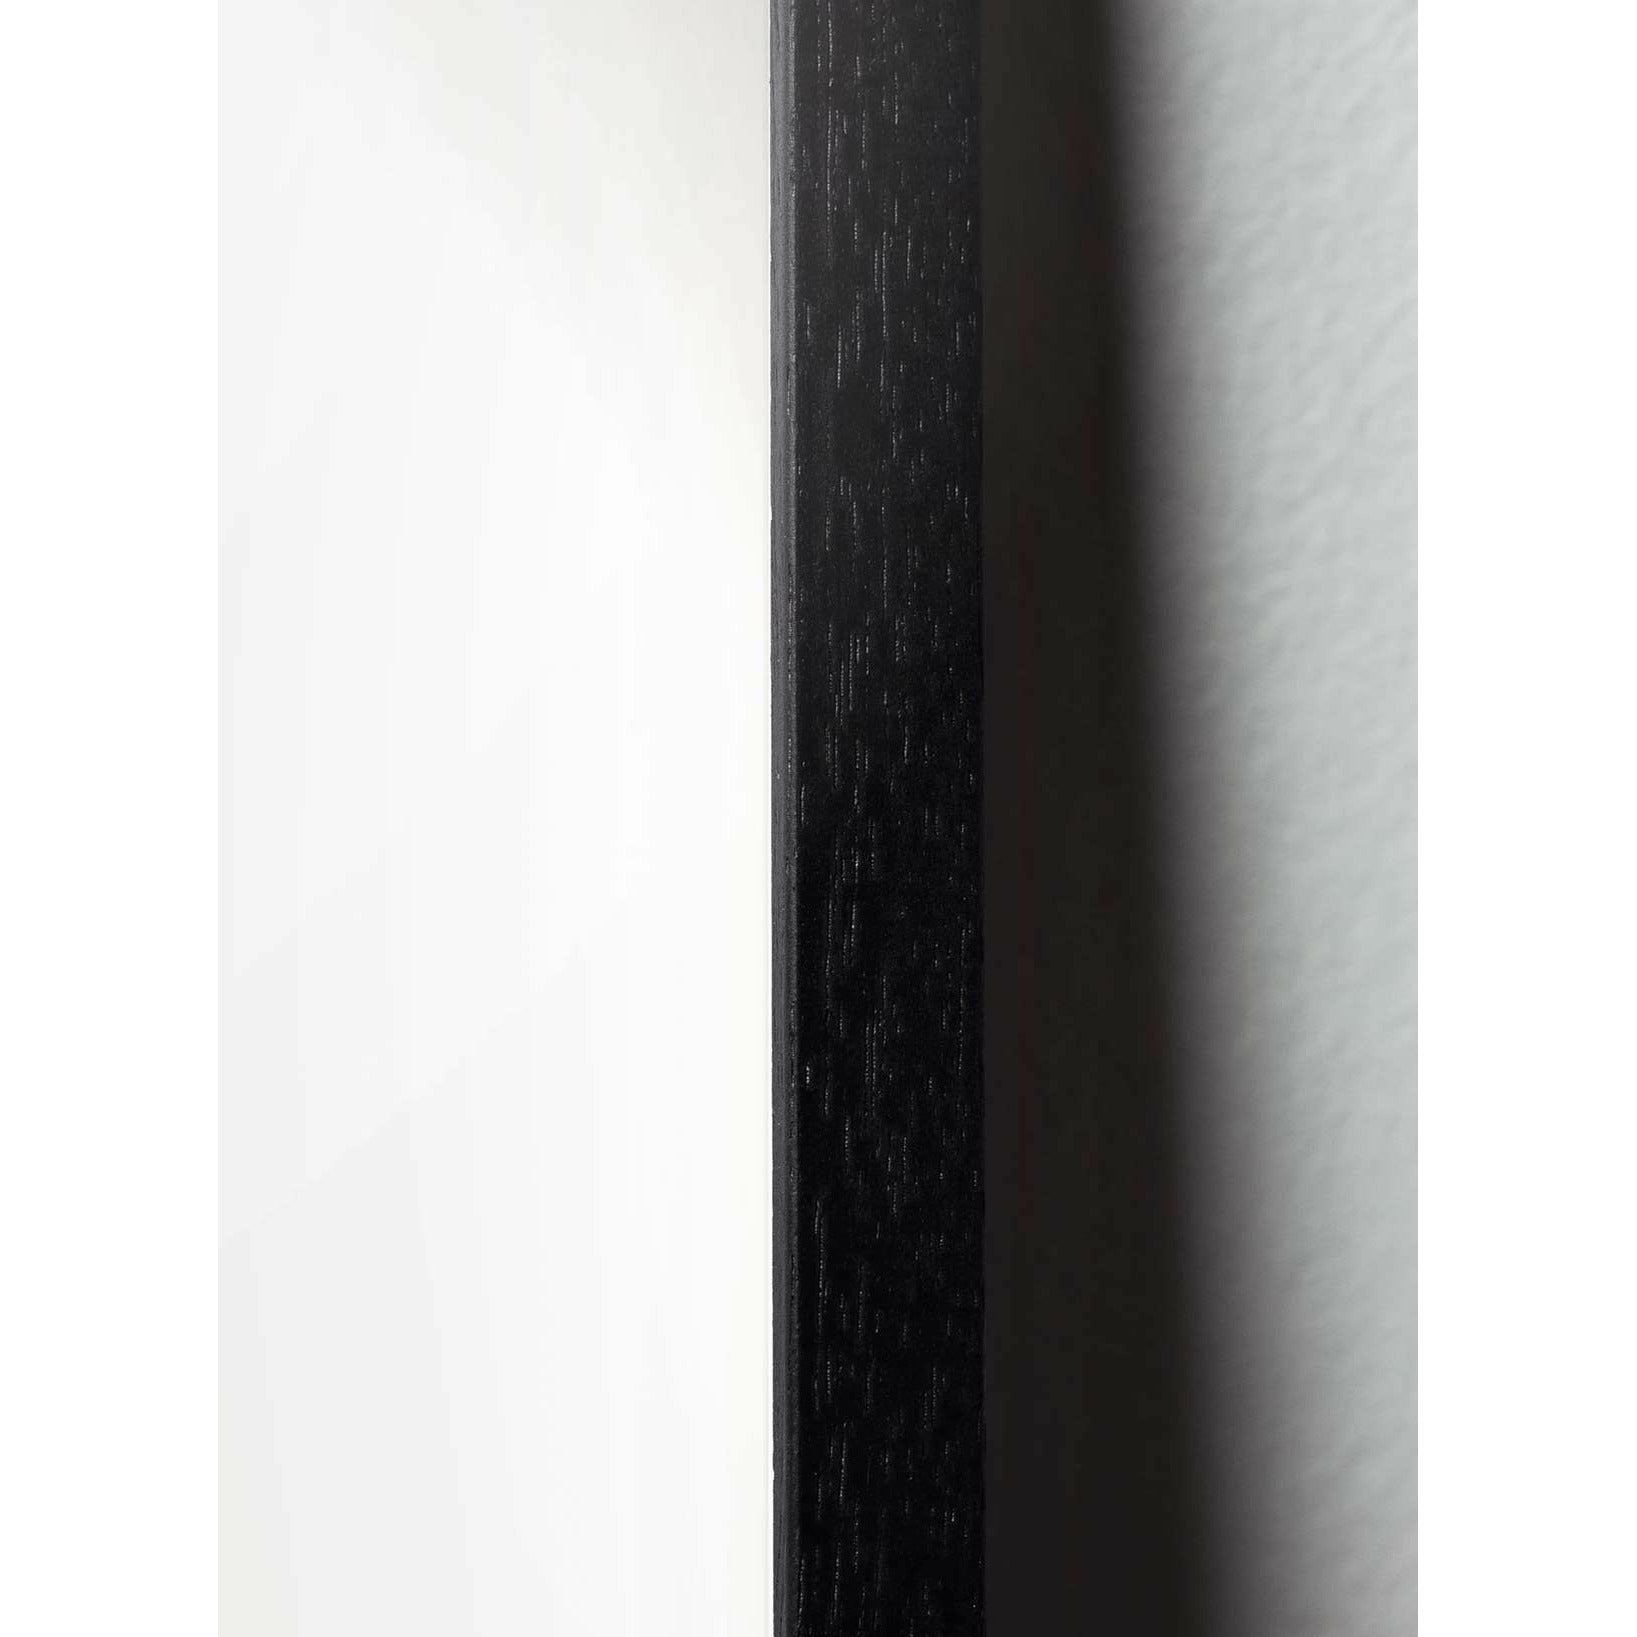 Plakát linky borovice kužele, rám v černém lakovaném dřevu 30x40 cm, bílé pozadí